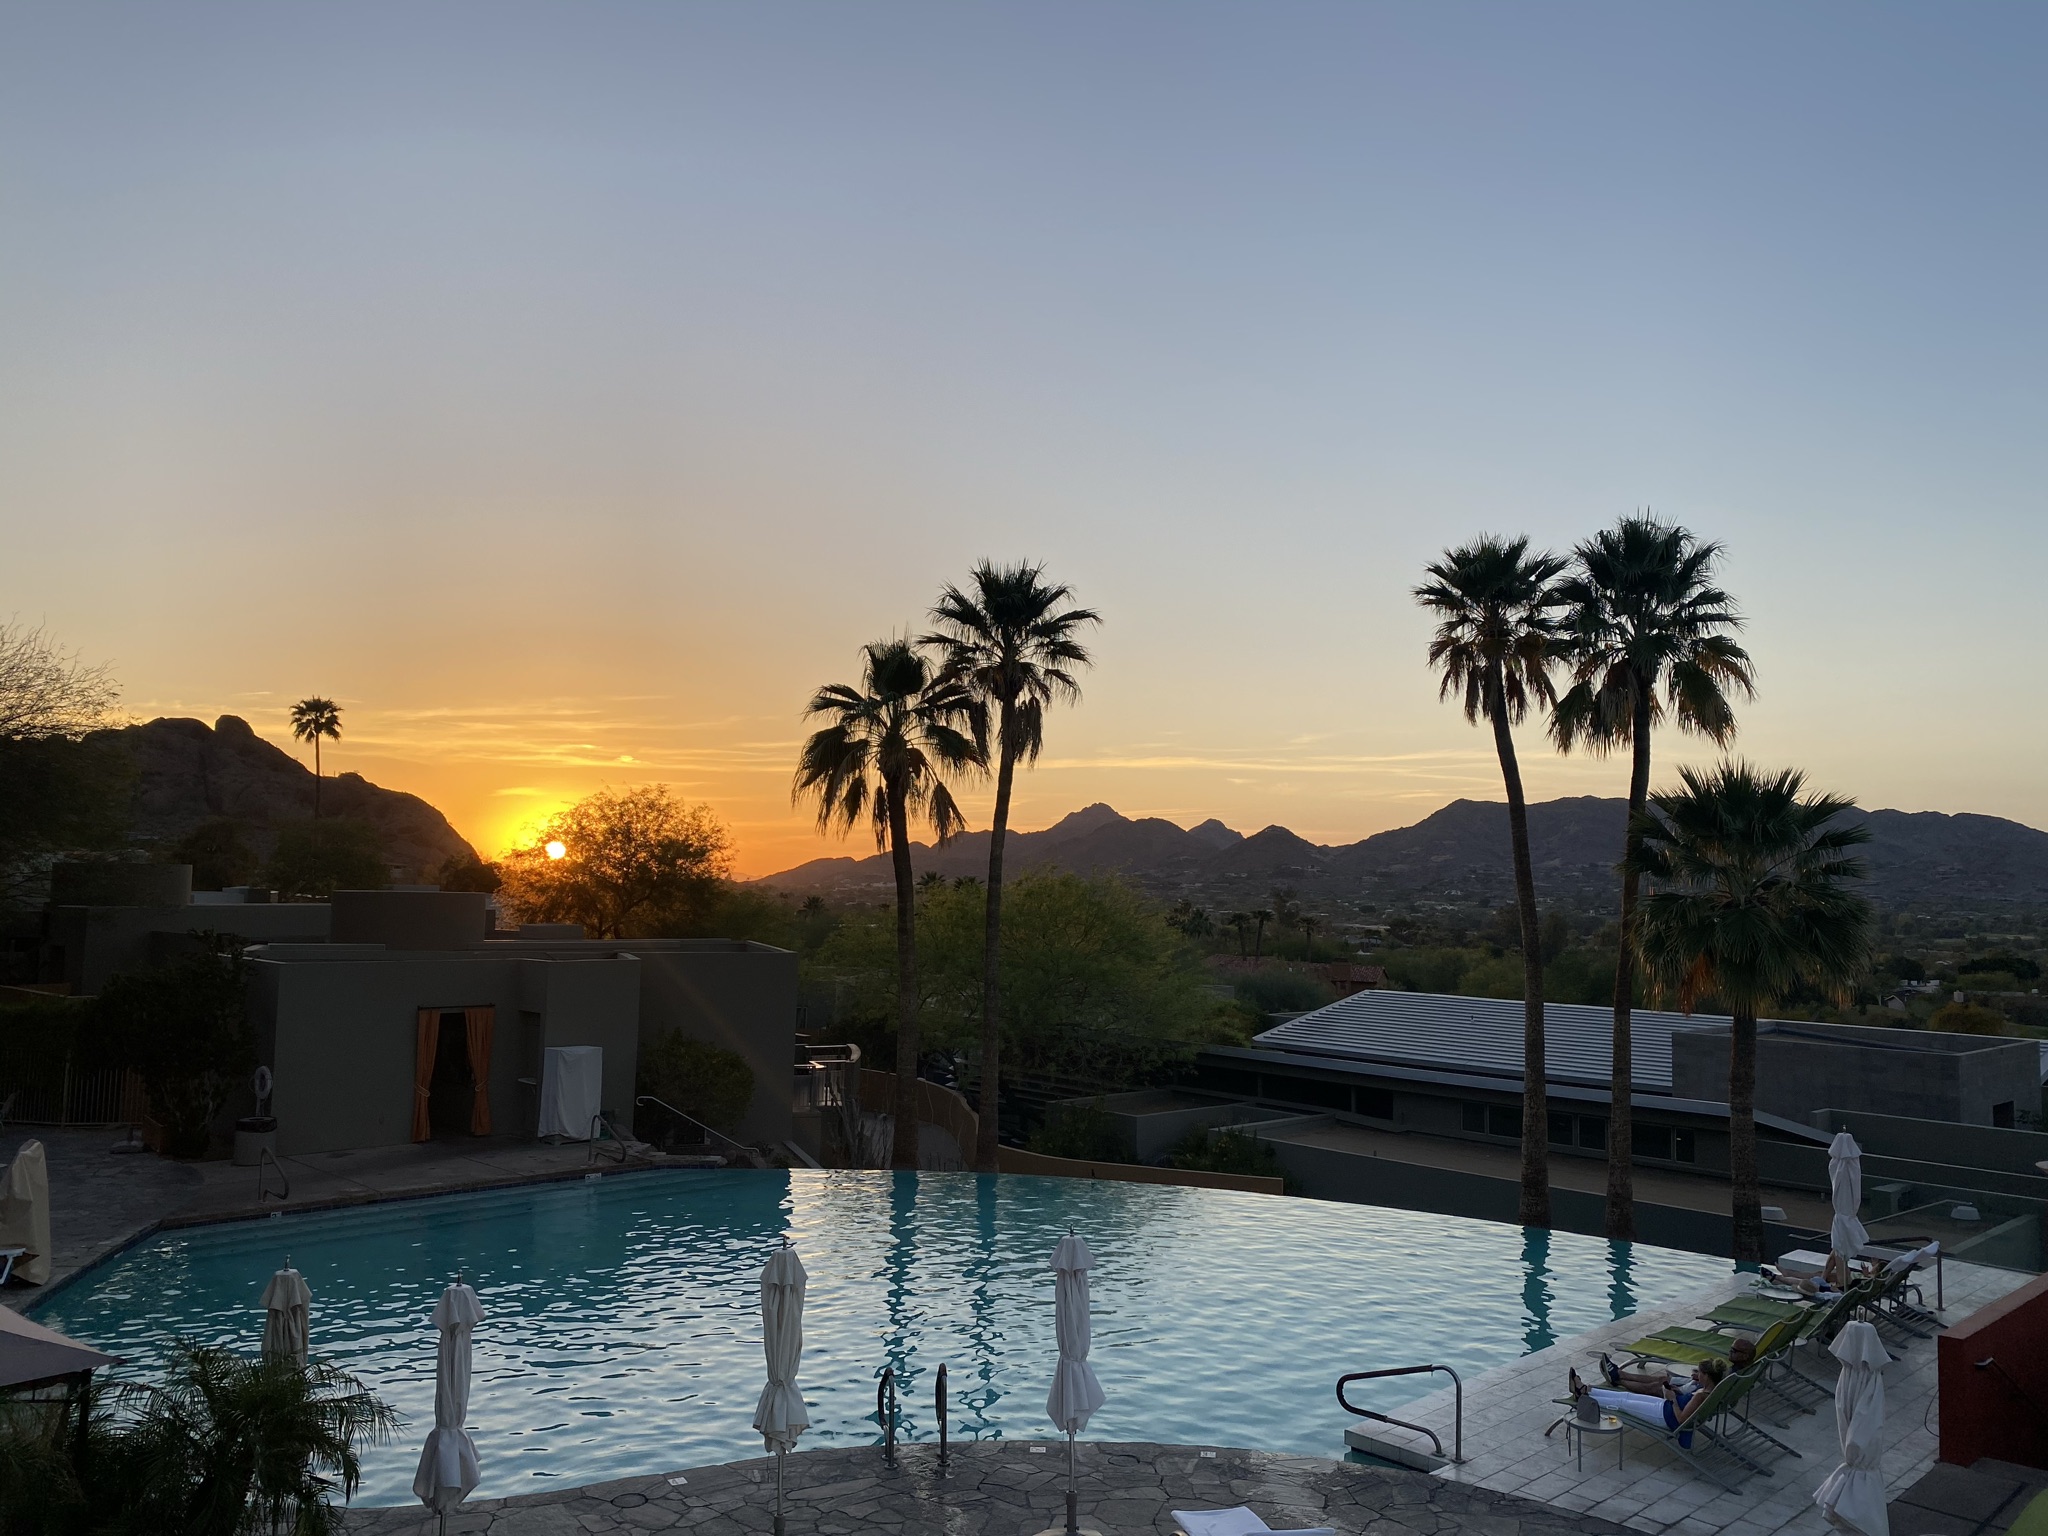 Sunset views in Phoenix. FemaleHiker